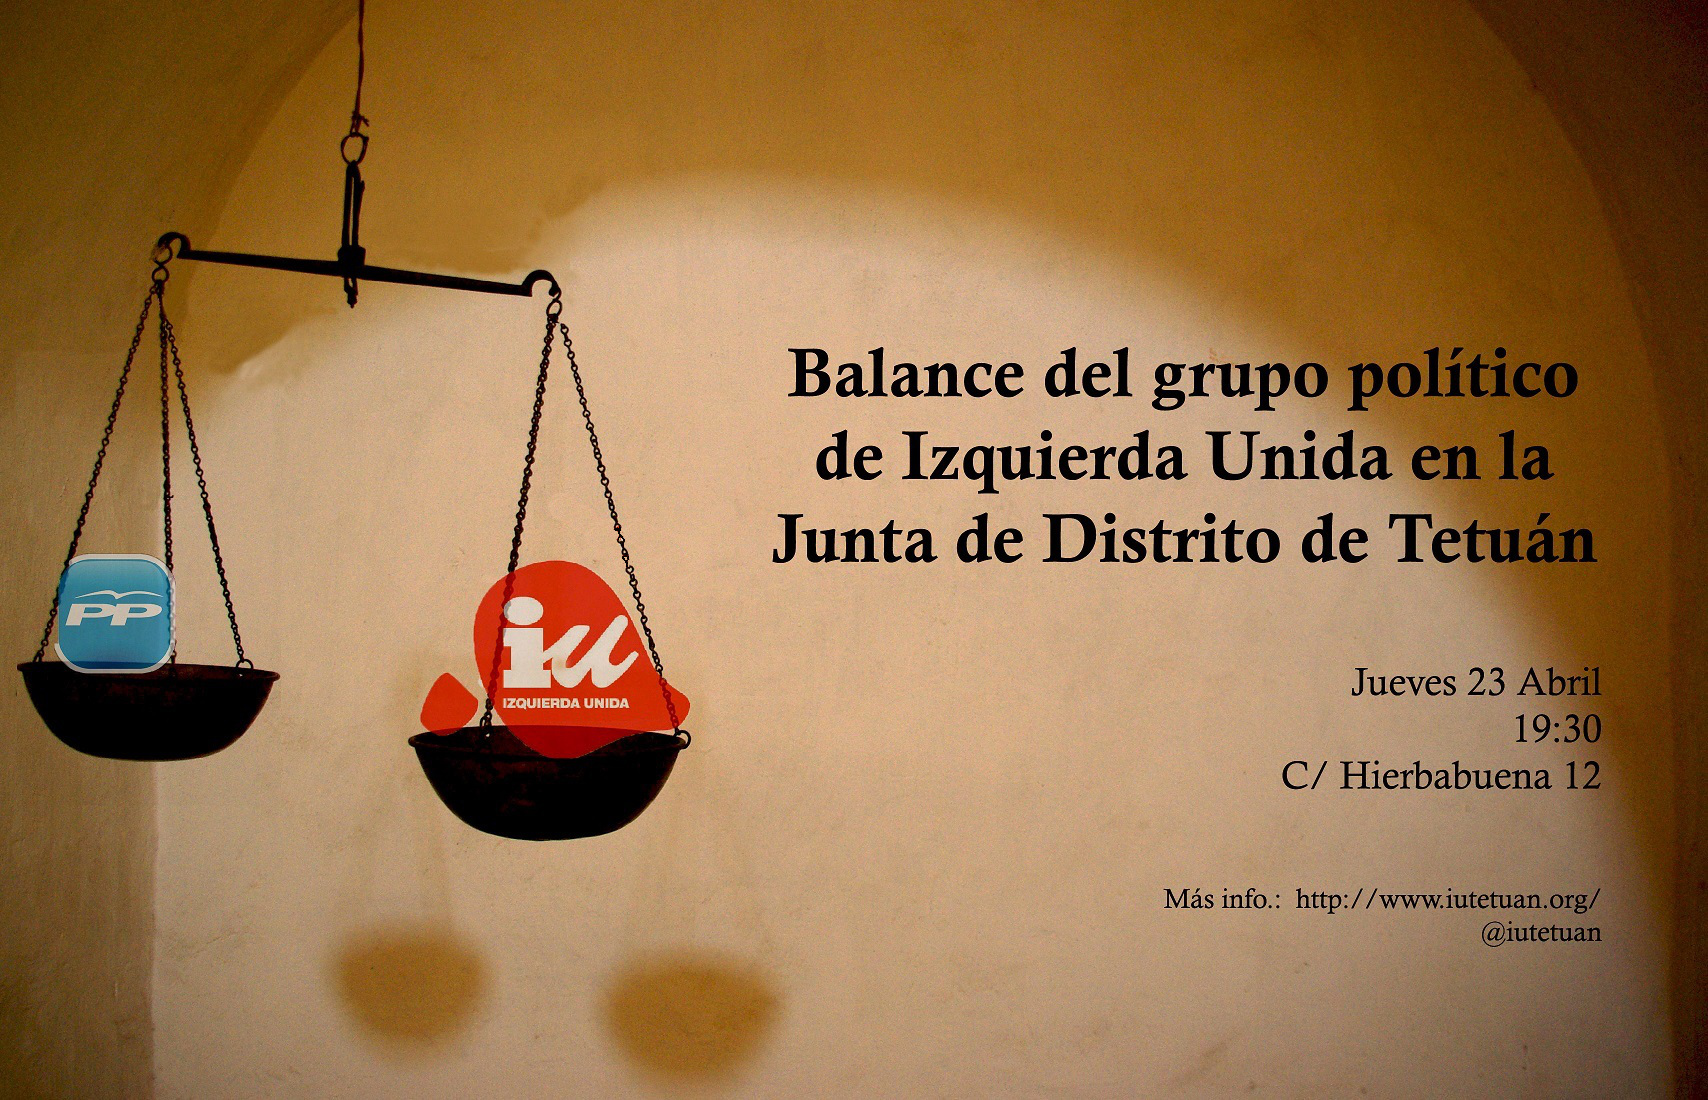 Balance de Izquierda Unida ciclo político 2011-2015 en la Junta Municipal de Distrito de Tetuán